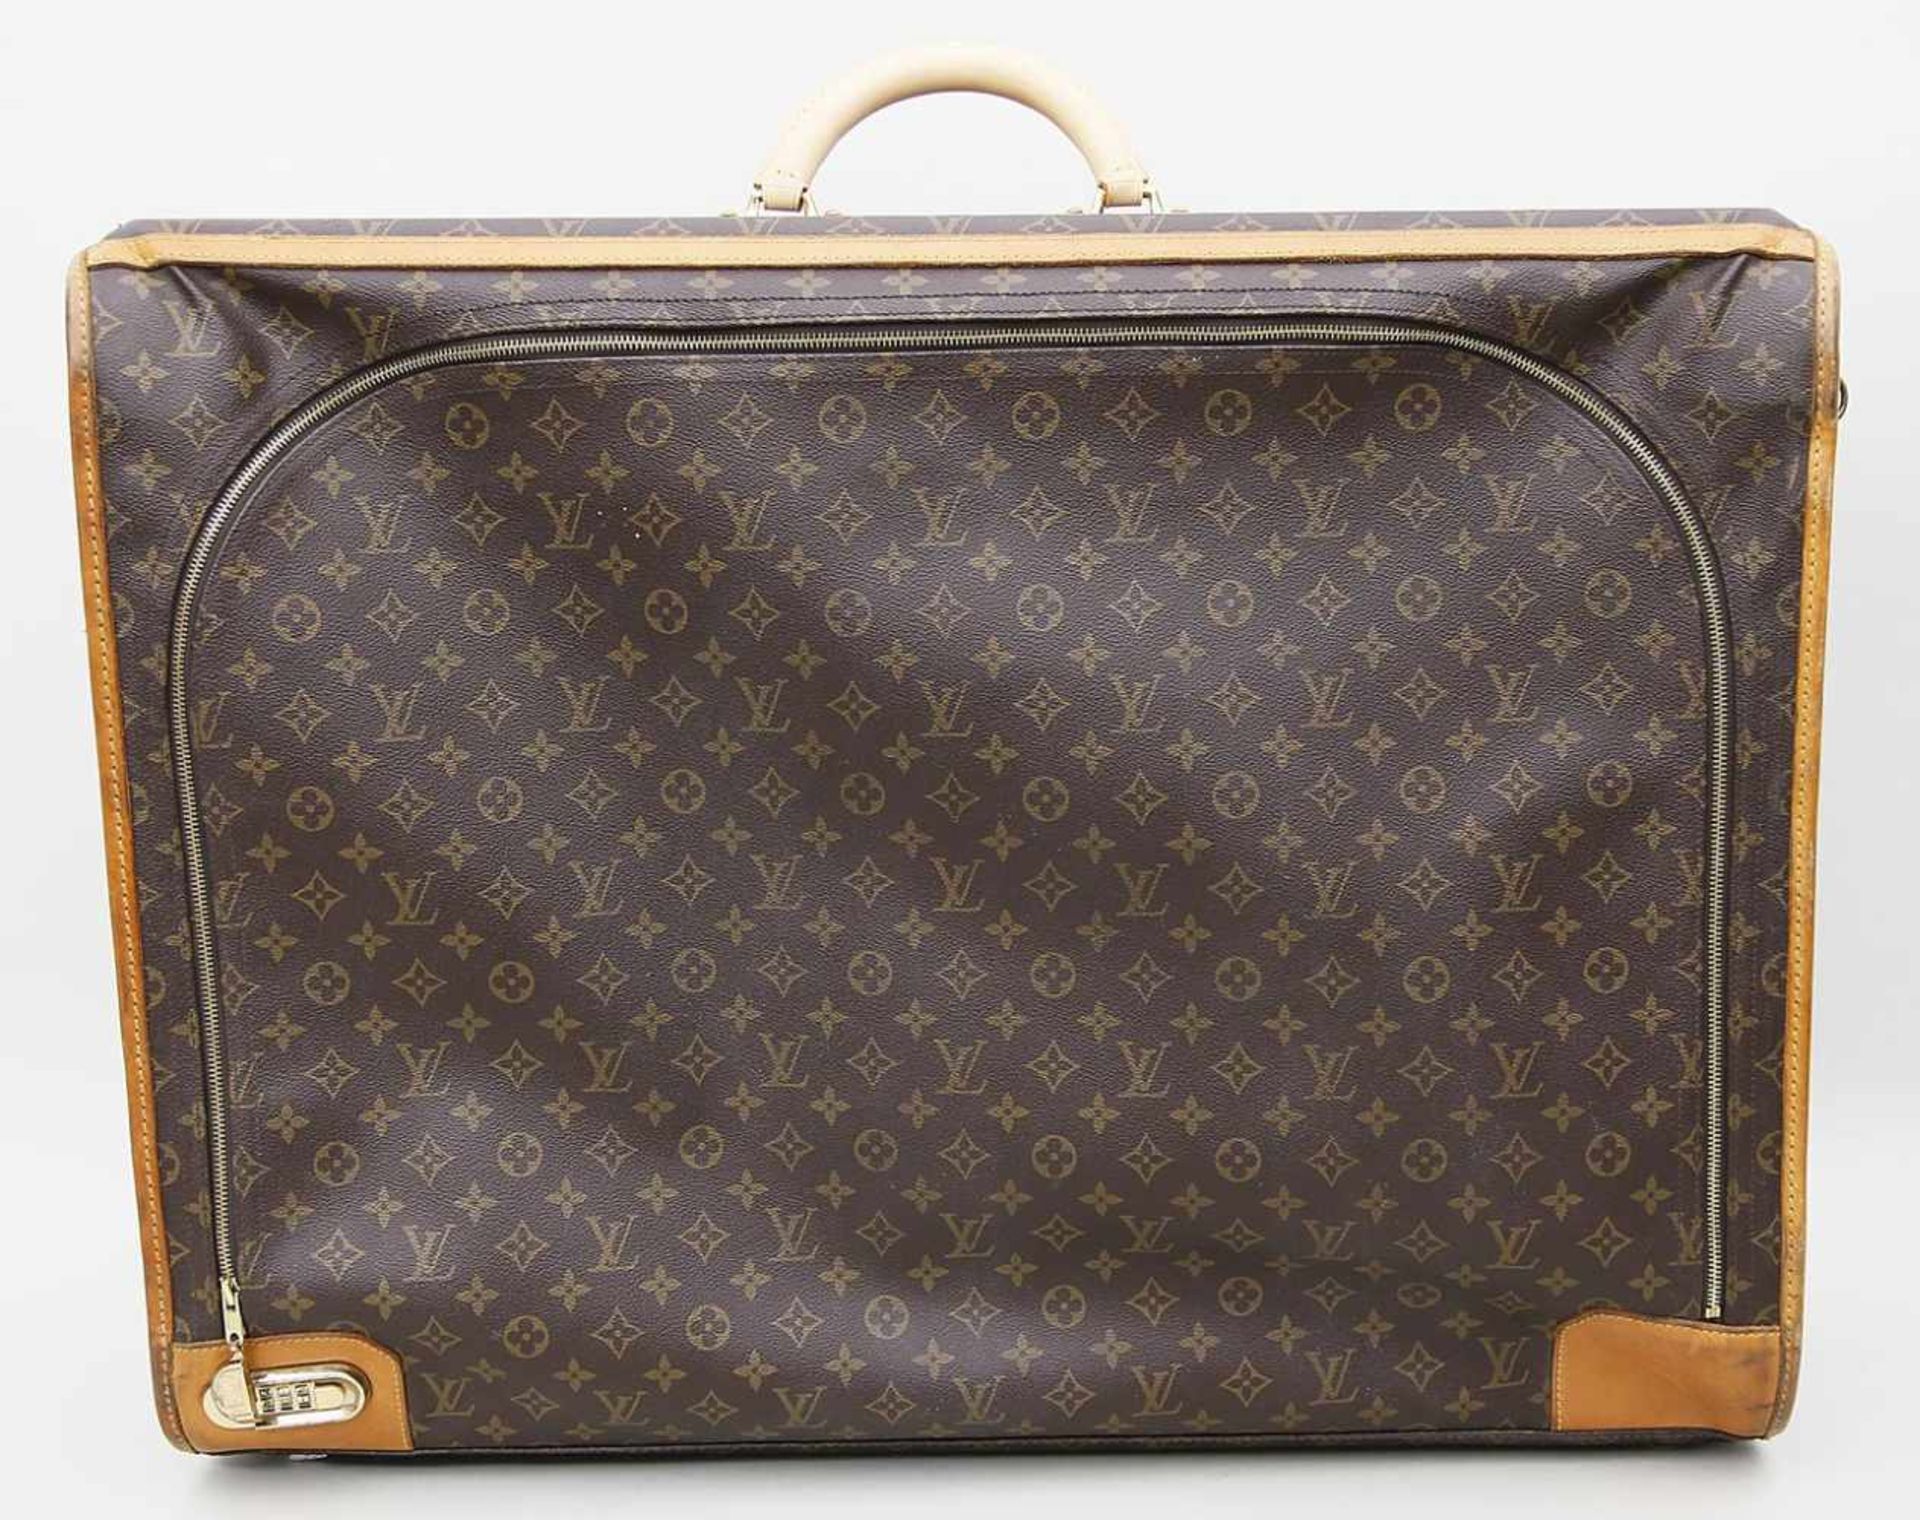 Koffer, Louis Vuitton.Braunes Monogram-Canvas mit braunen Lederbeschlägen. Goldfarbene Hardware. Mit